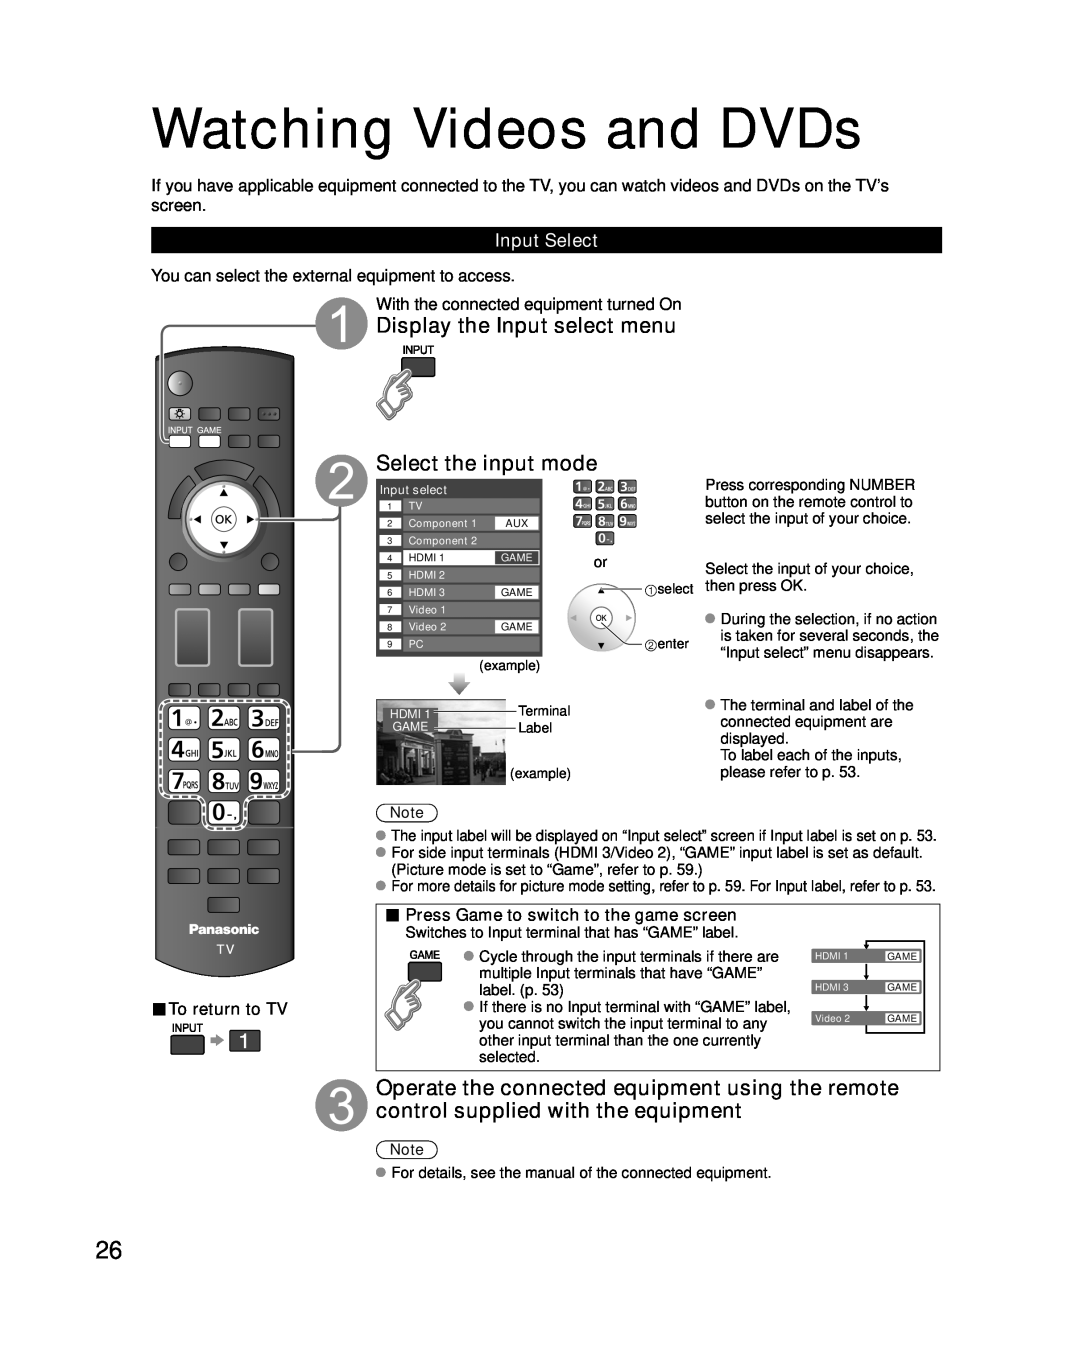 Panasonic TC-P54G10, TC-P50G10 Watching Videos and DVDs, Display the Input select menu Select the input mode, Input Select 